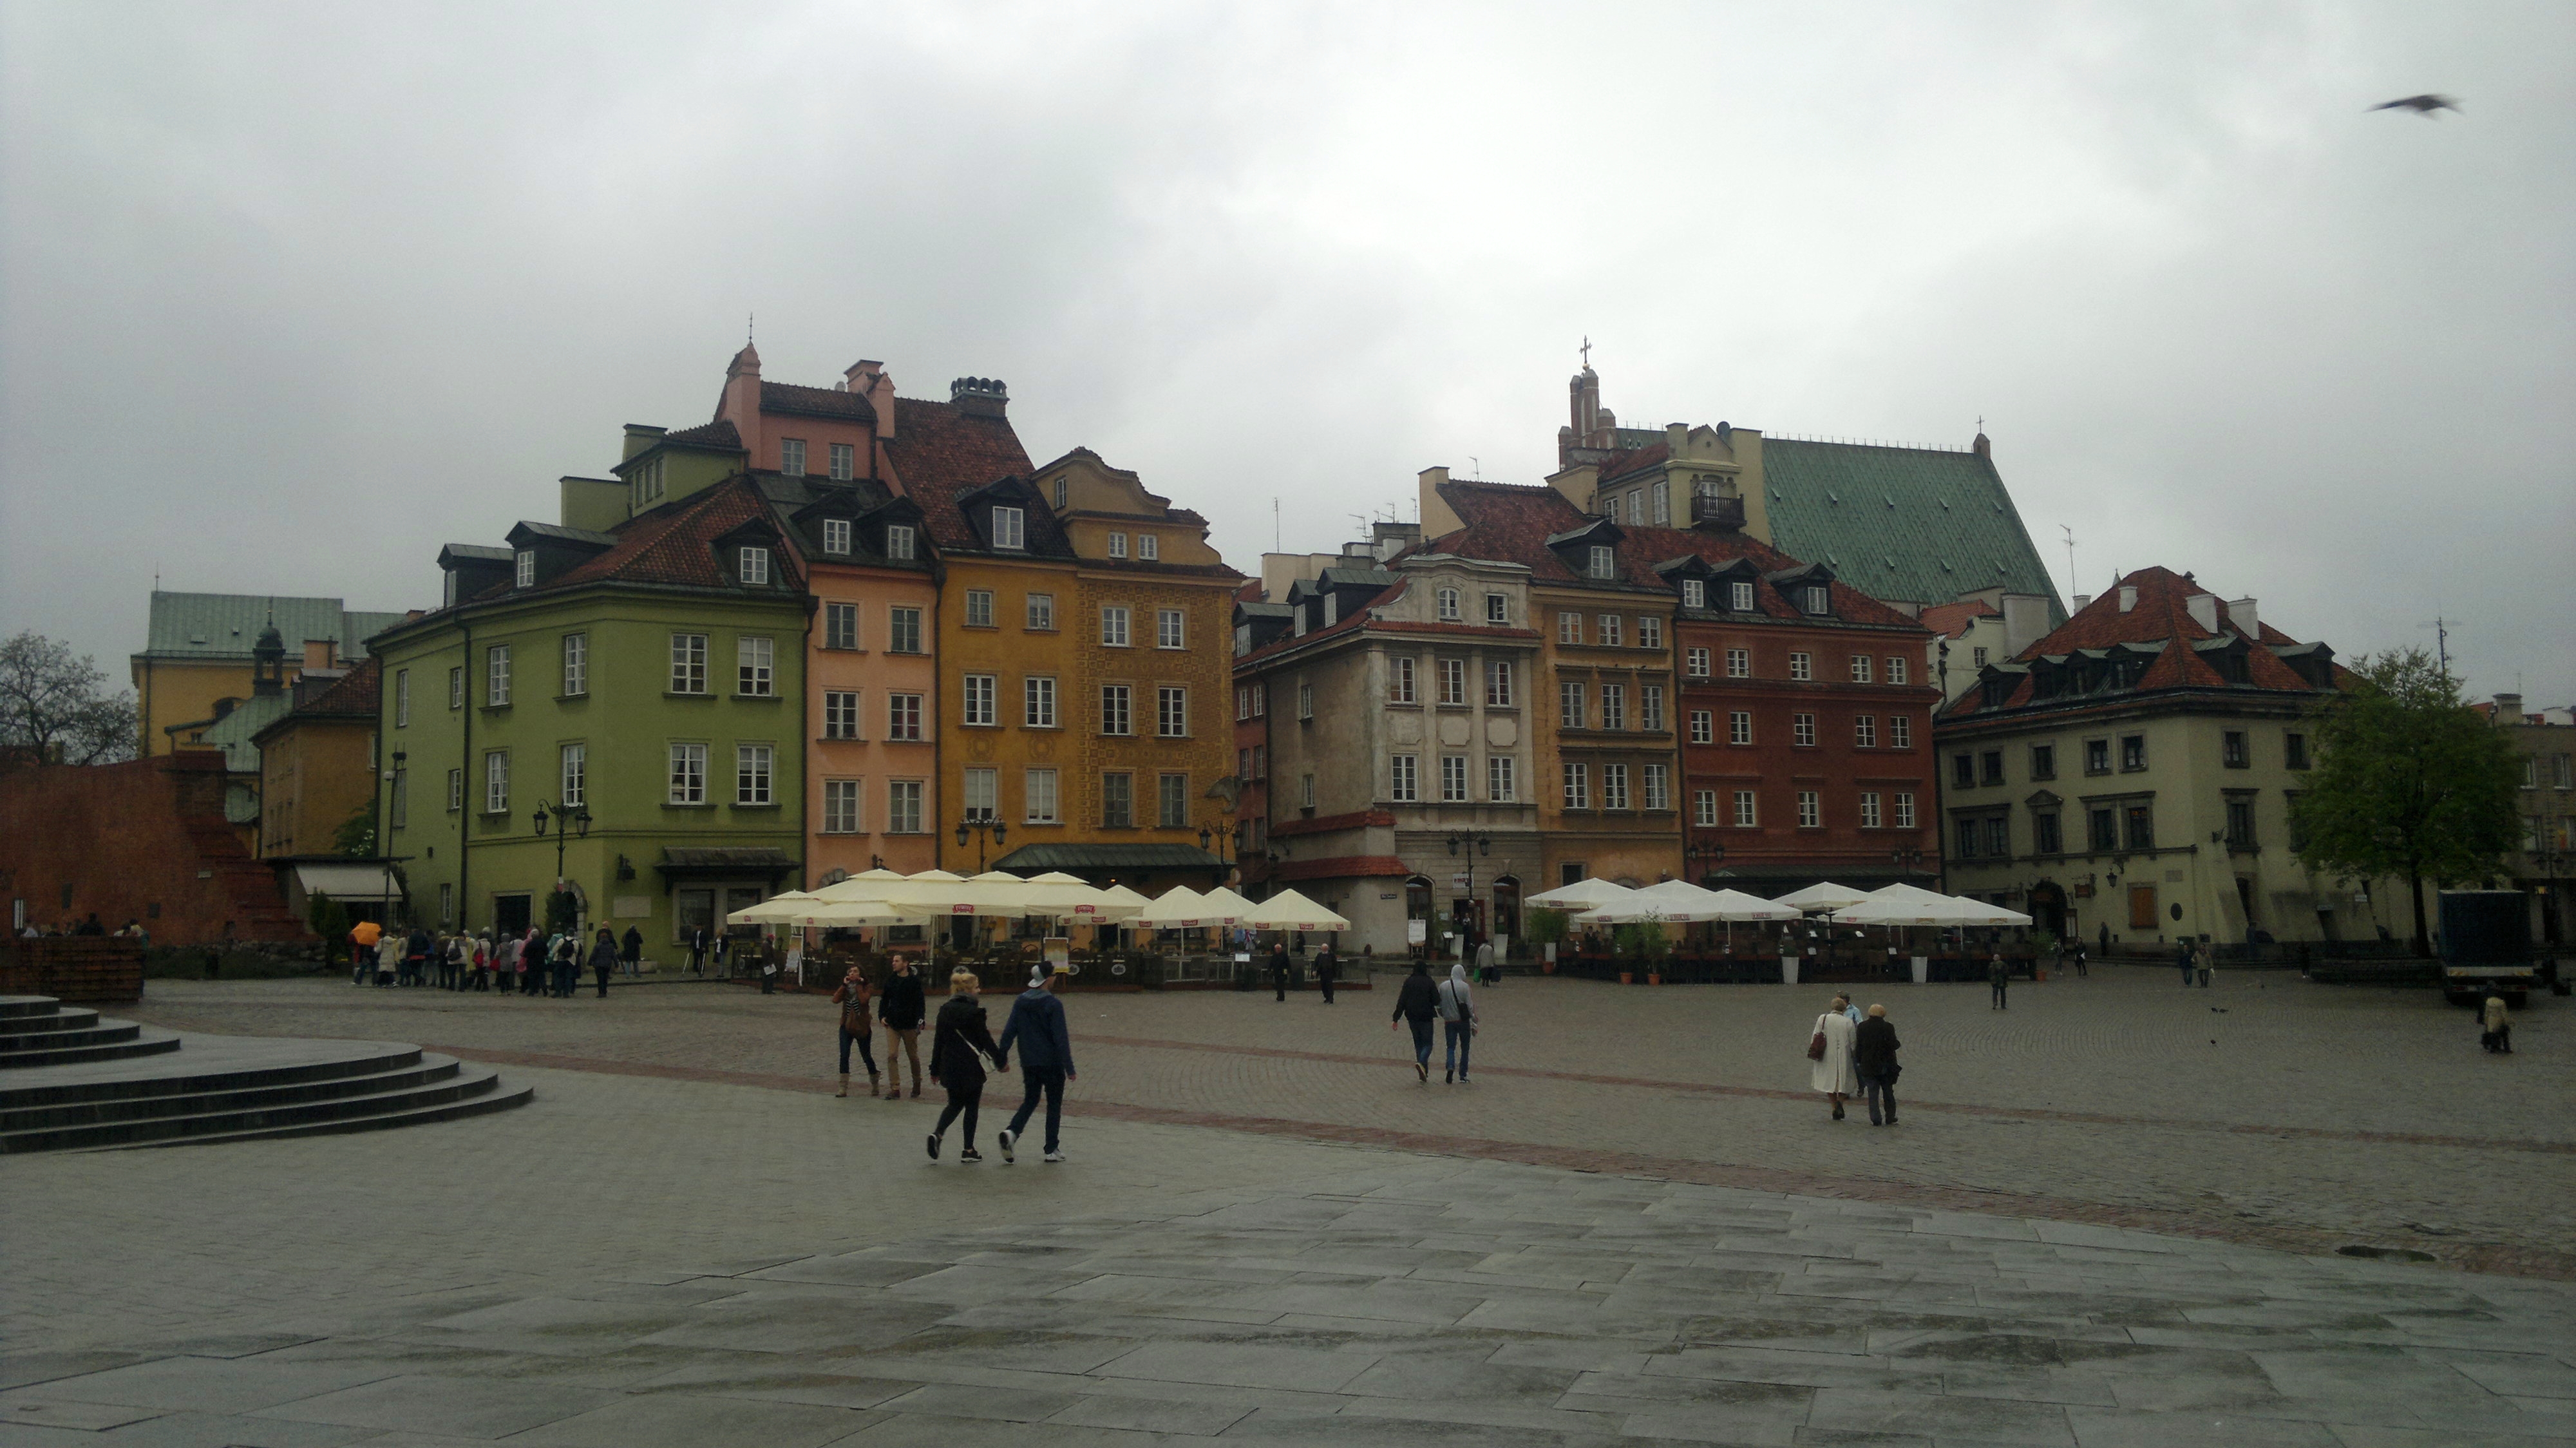 Old Town Market Square (Rynek Starego Miasta), Warsaw